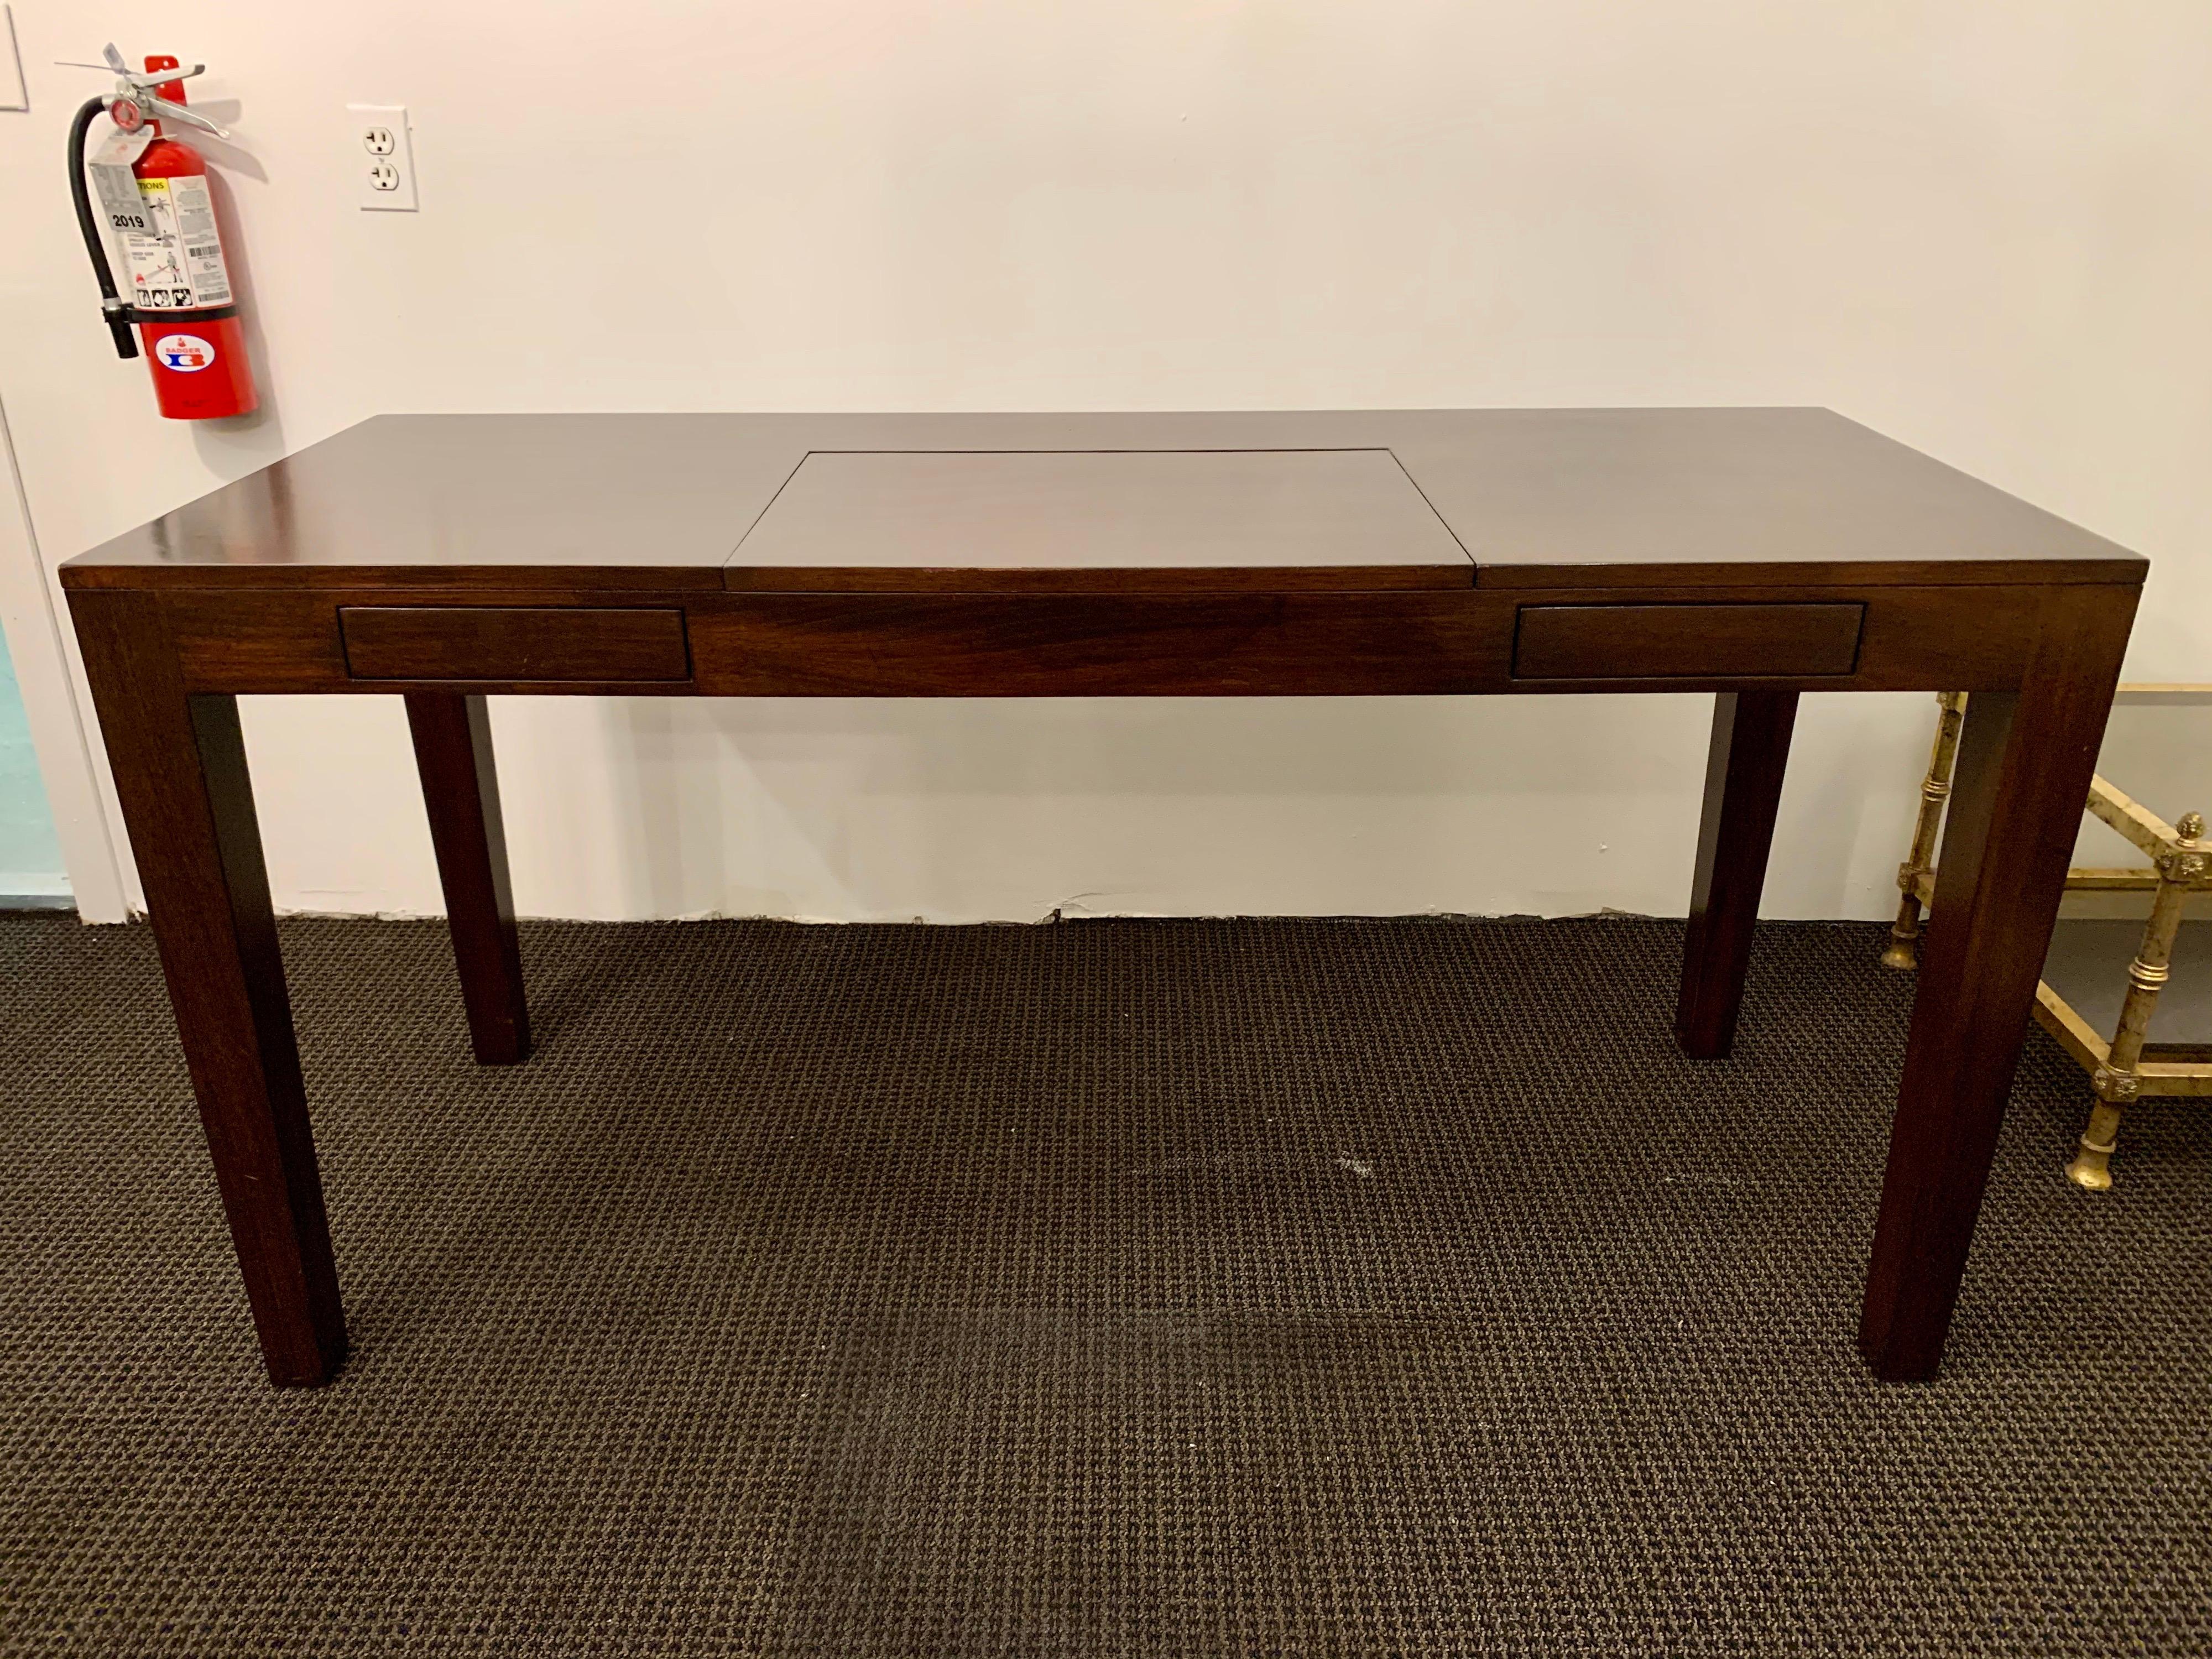 Dieser schlichte und stilvolle Schreibtisch im Parsons-Stil verfügt zusätzlich über eine klappbare Waschtischplatte mit Stauraum. Perfekt für die Aufbewahrung eines Laptops! Zwei Schubladen links und rechts des Waschtischs in der Mitte.